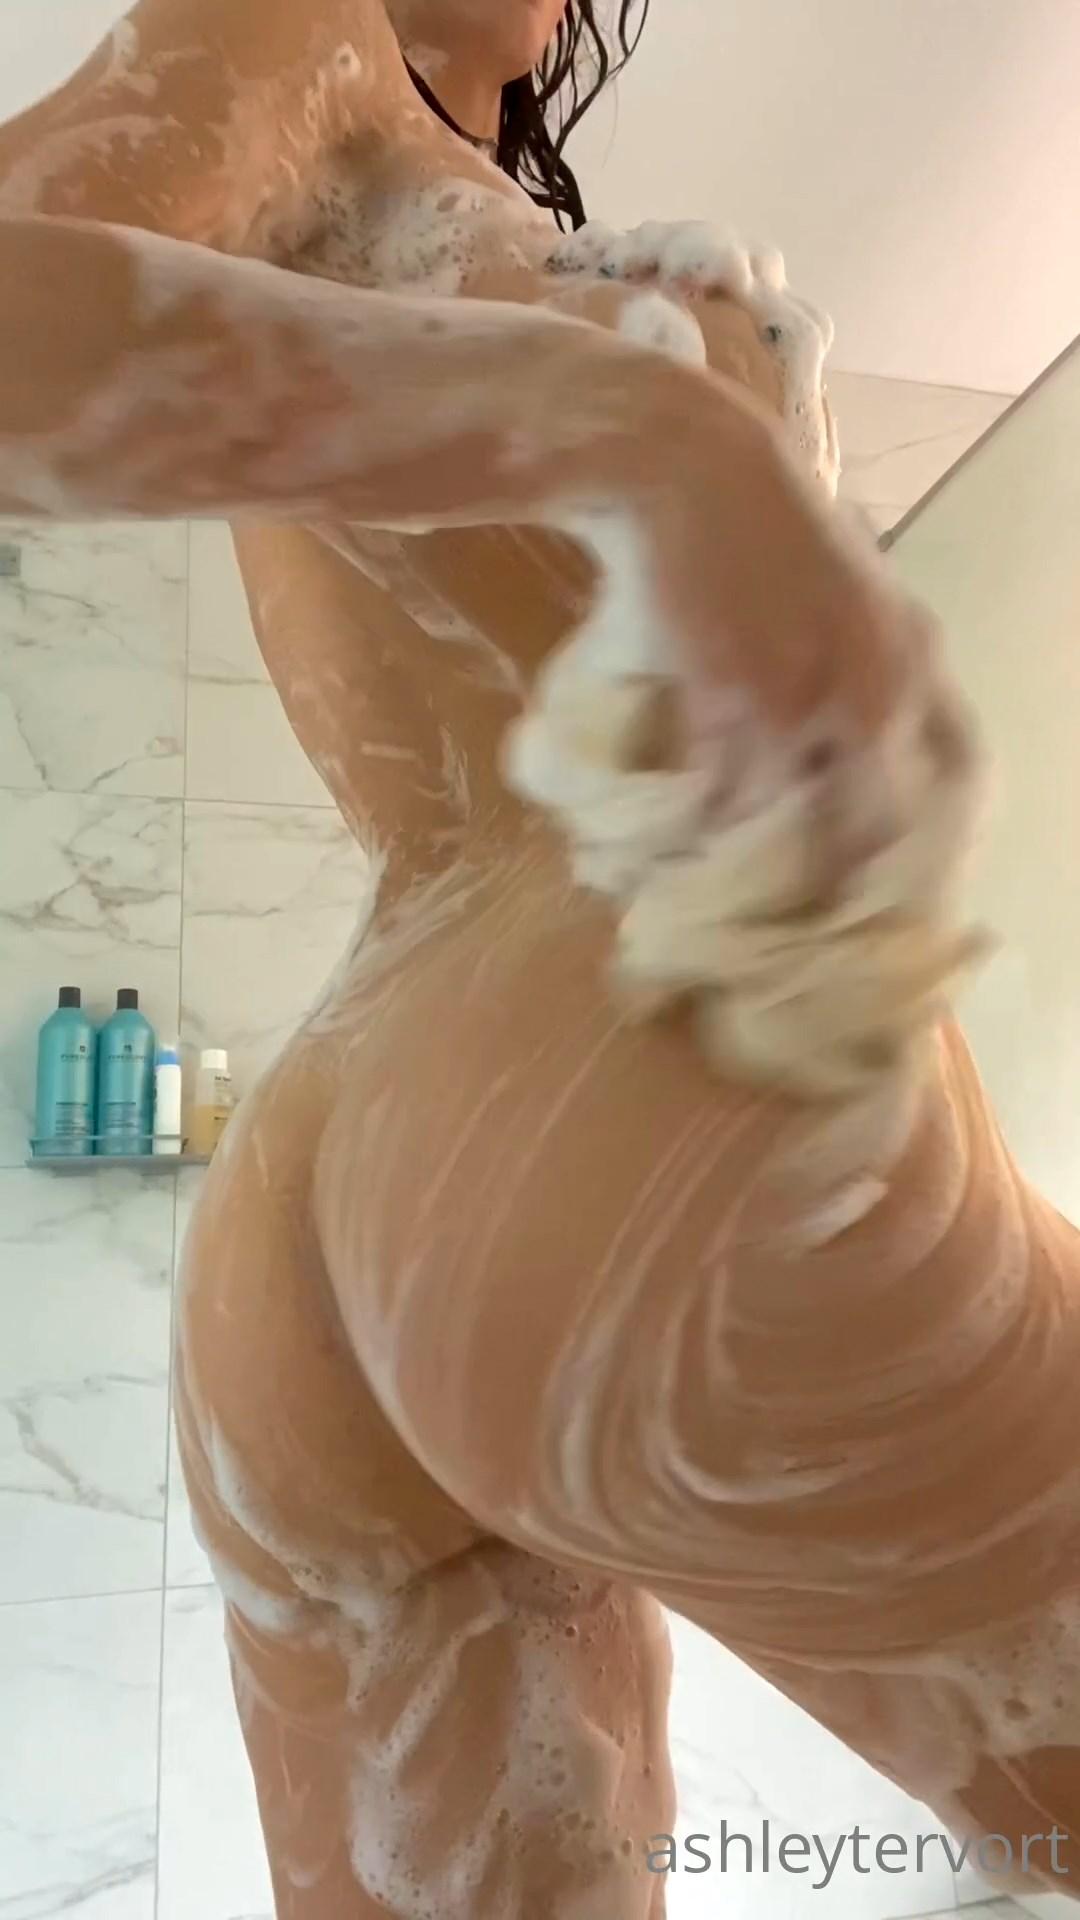 Tease ashley video leaked ass shower tervort onlyfans Lexi2legit Leaked